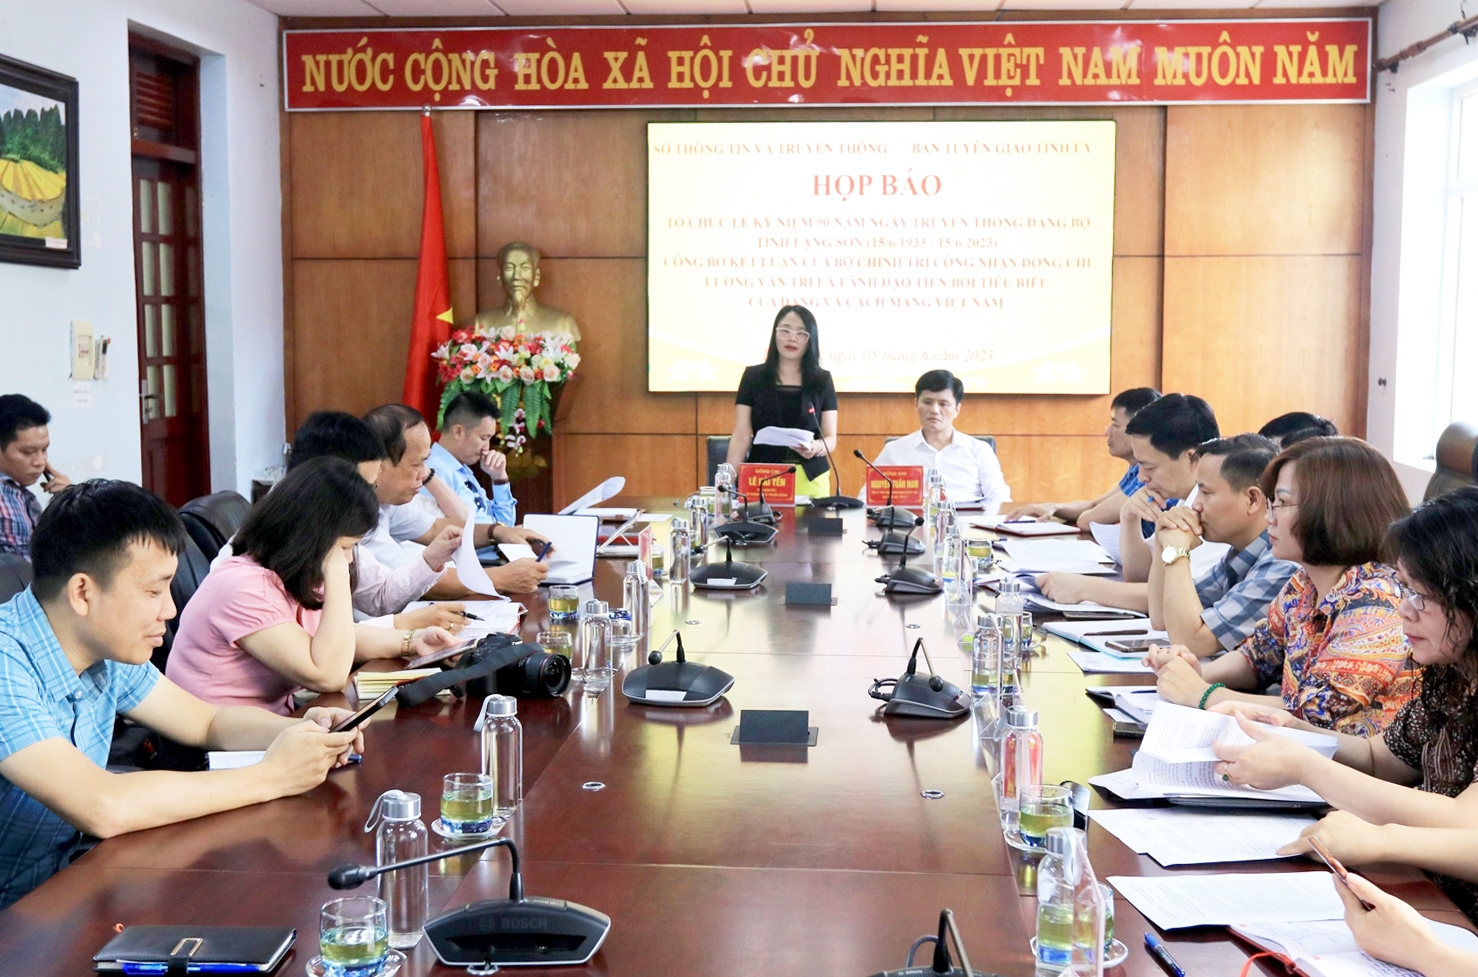 Bà Lê Hải Yên - Phó Giám đốc Sở TT&TT Lạng Sơn phát biểu tại buổi họp báo